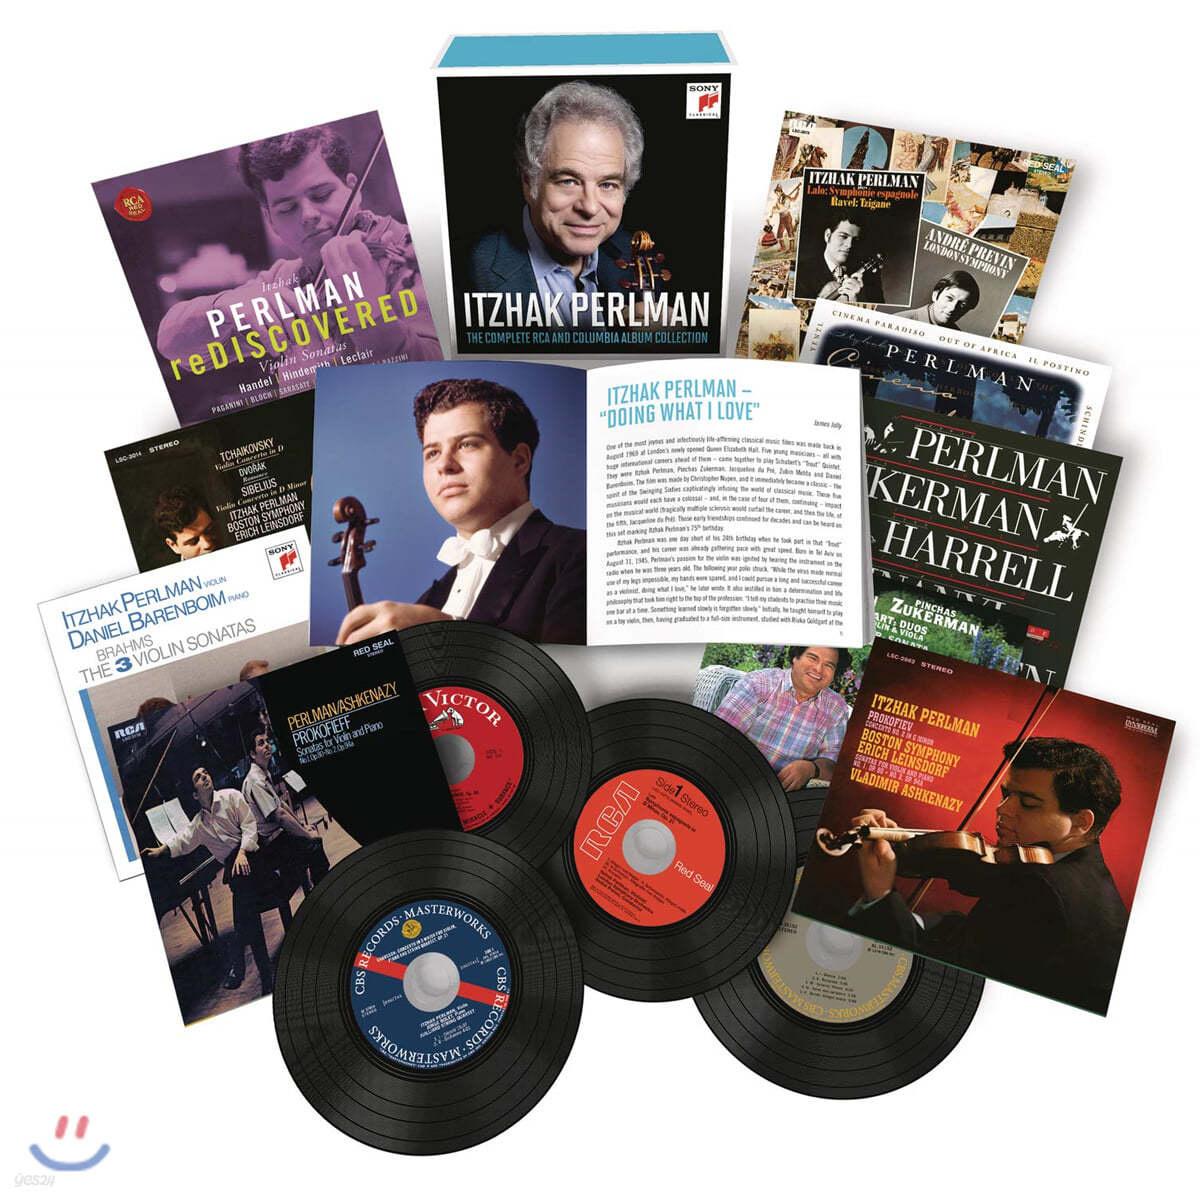 이차크 펄만 RCA & 컬럼비아 녹음 전집 (Itzhak Perlman - The Complete RCA and Columbia Album Collection)